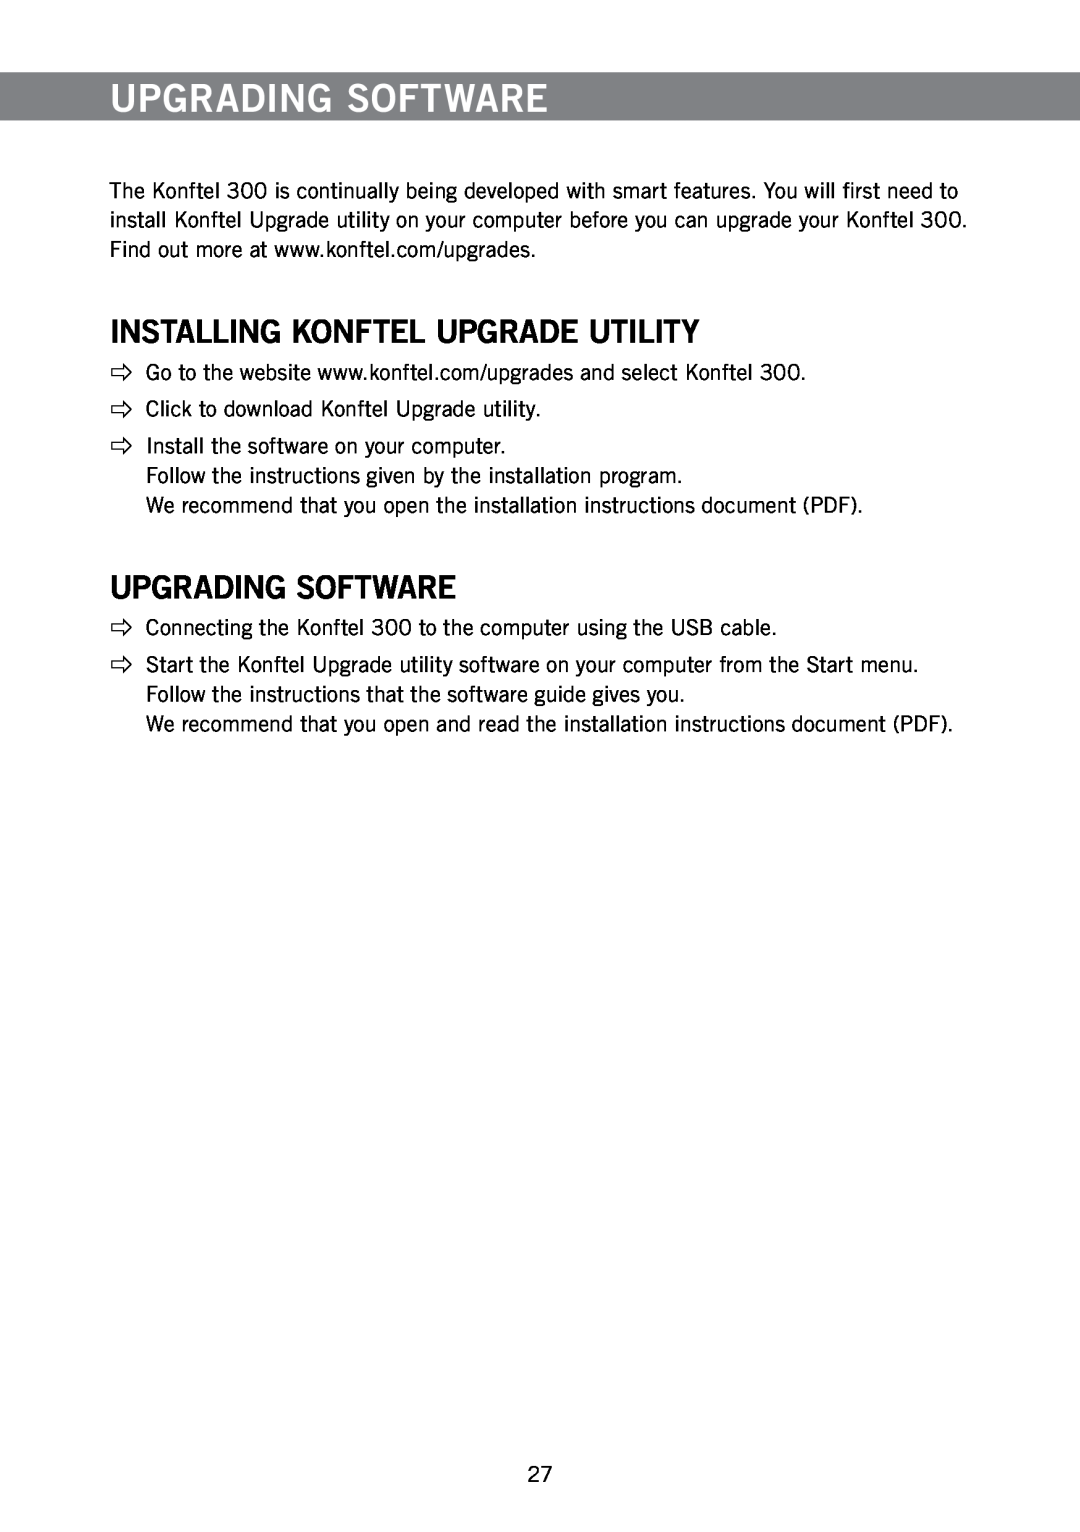 Konftel 300 manual Upgrading Software, Installing Konftel Upgrade Utility 